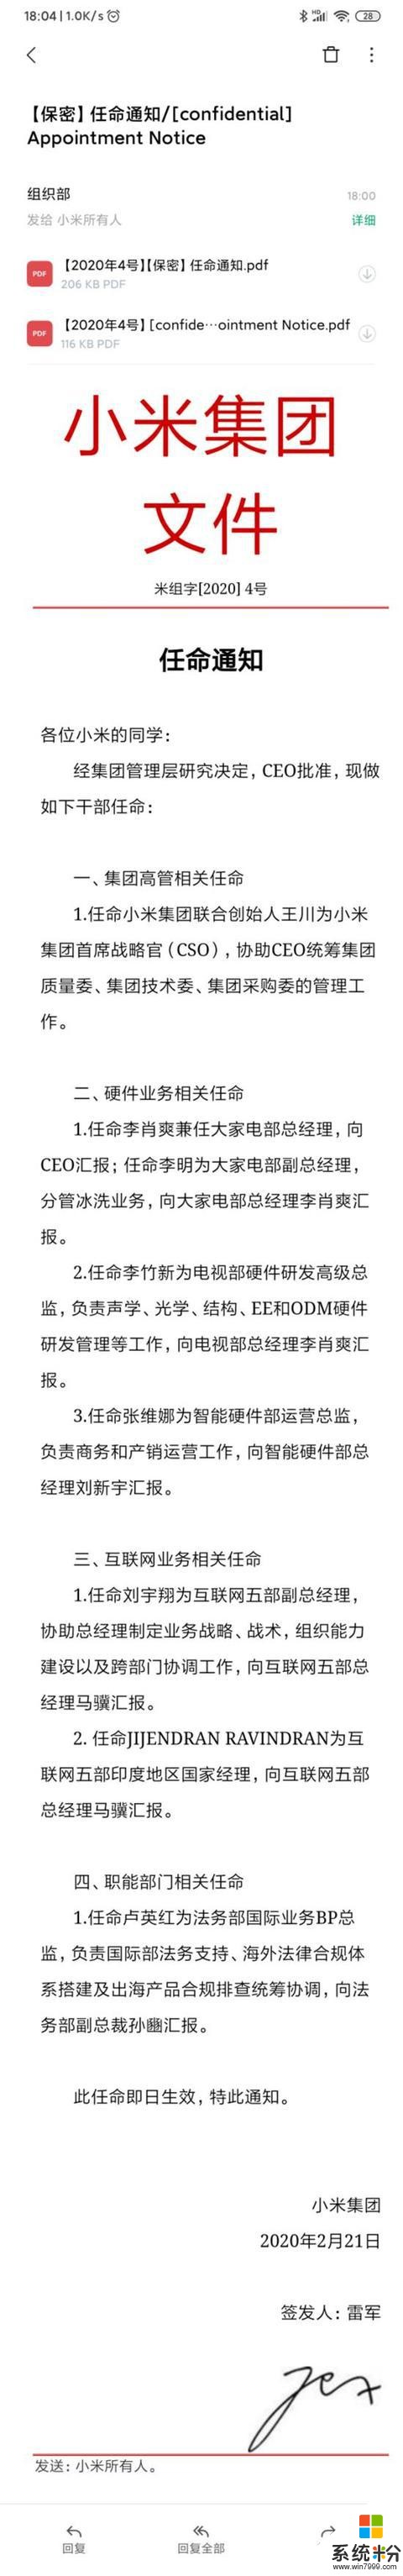 小米最新任命：王川担任首席战略官（CSO）(1)